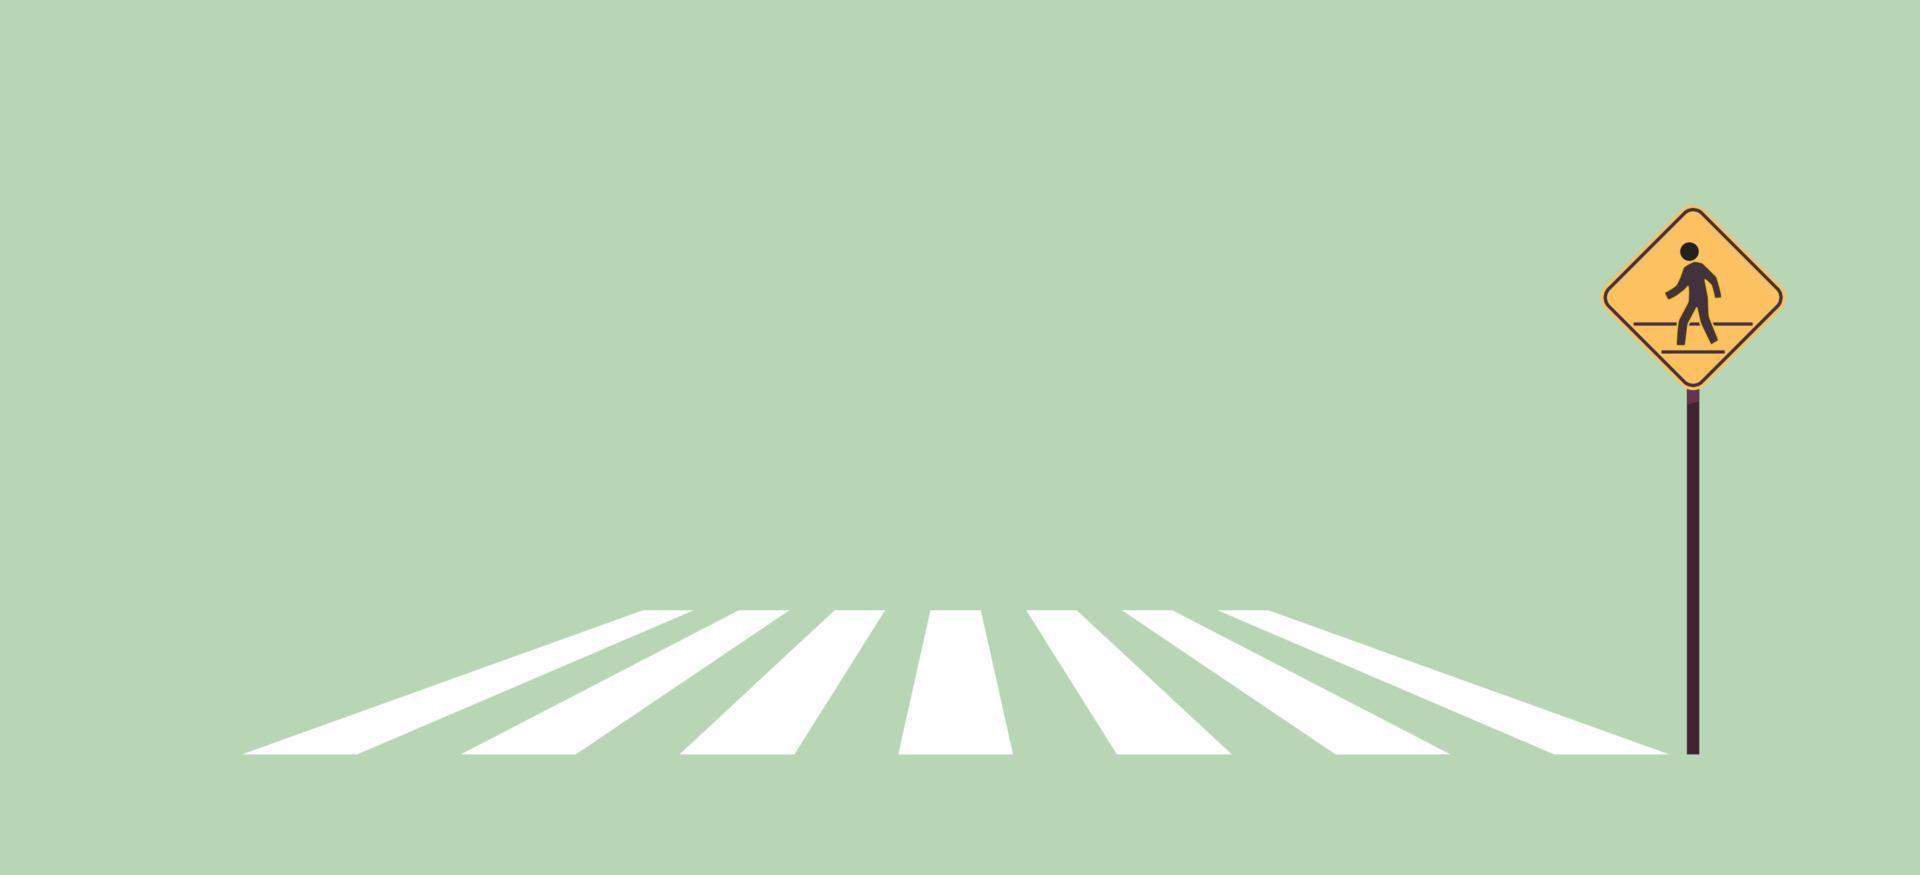 sinal de pedestre e ilustração em vetor plana de sinal de estrada de tráfego.